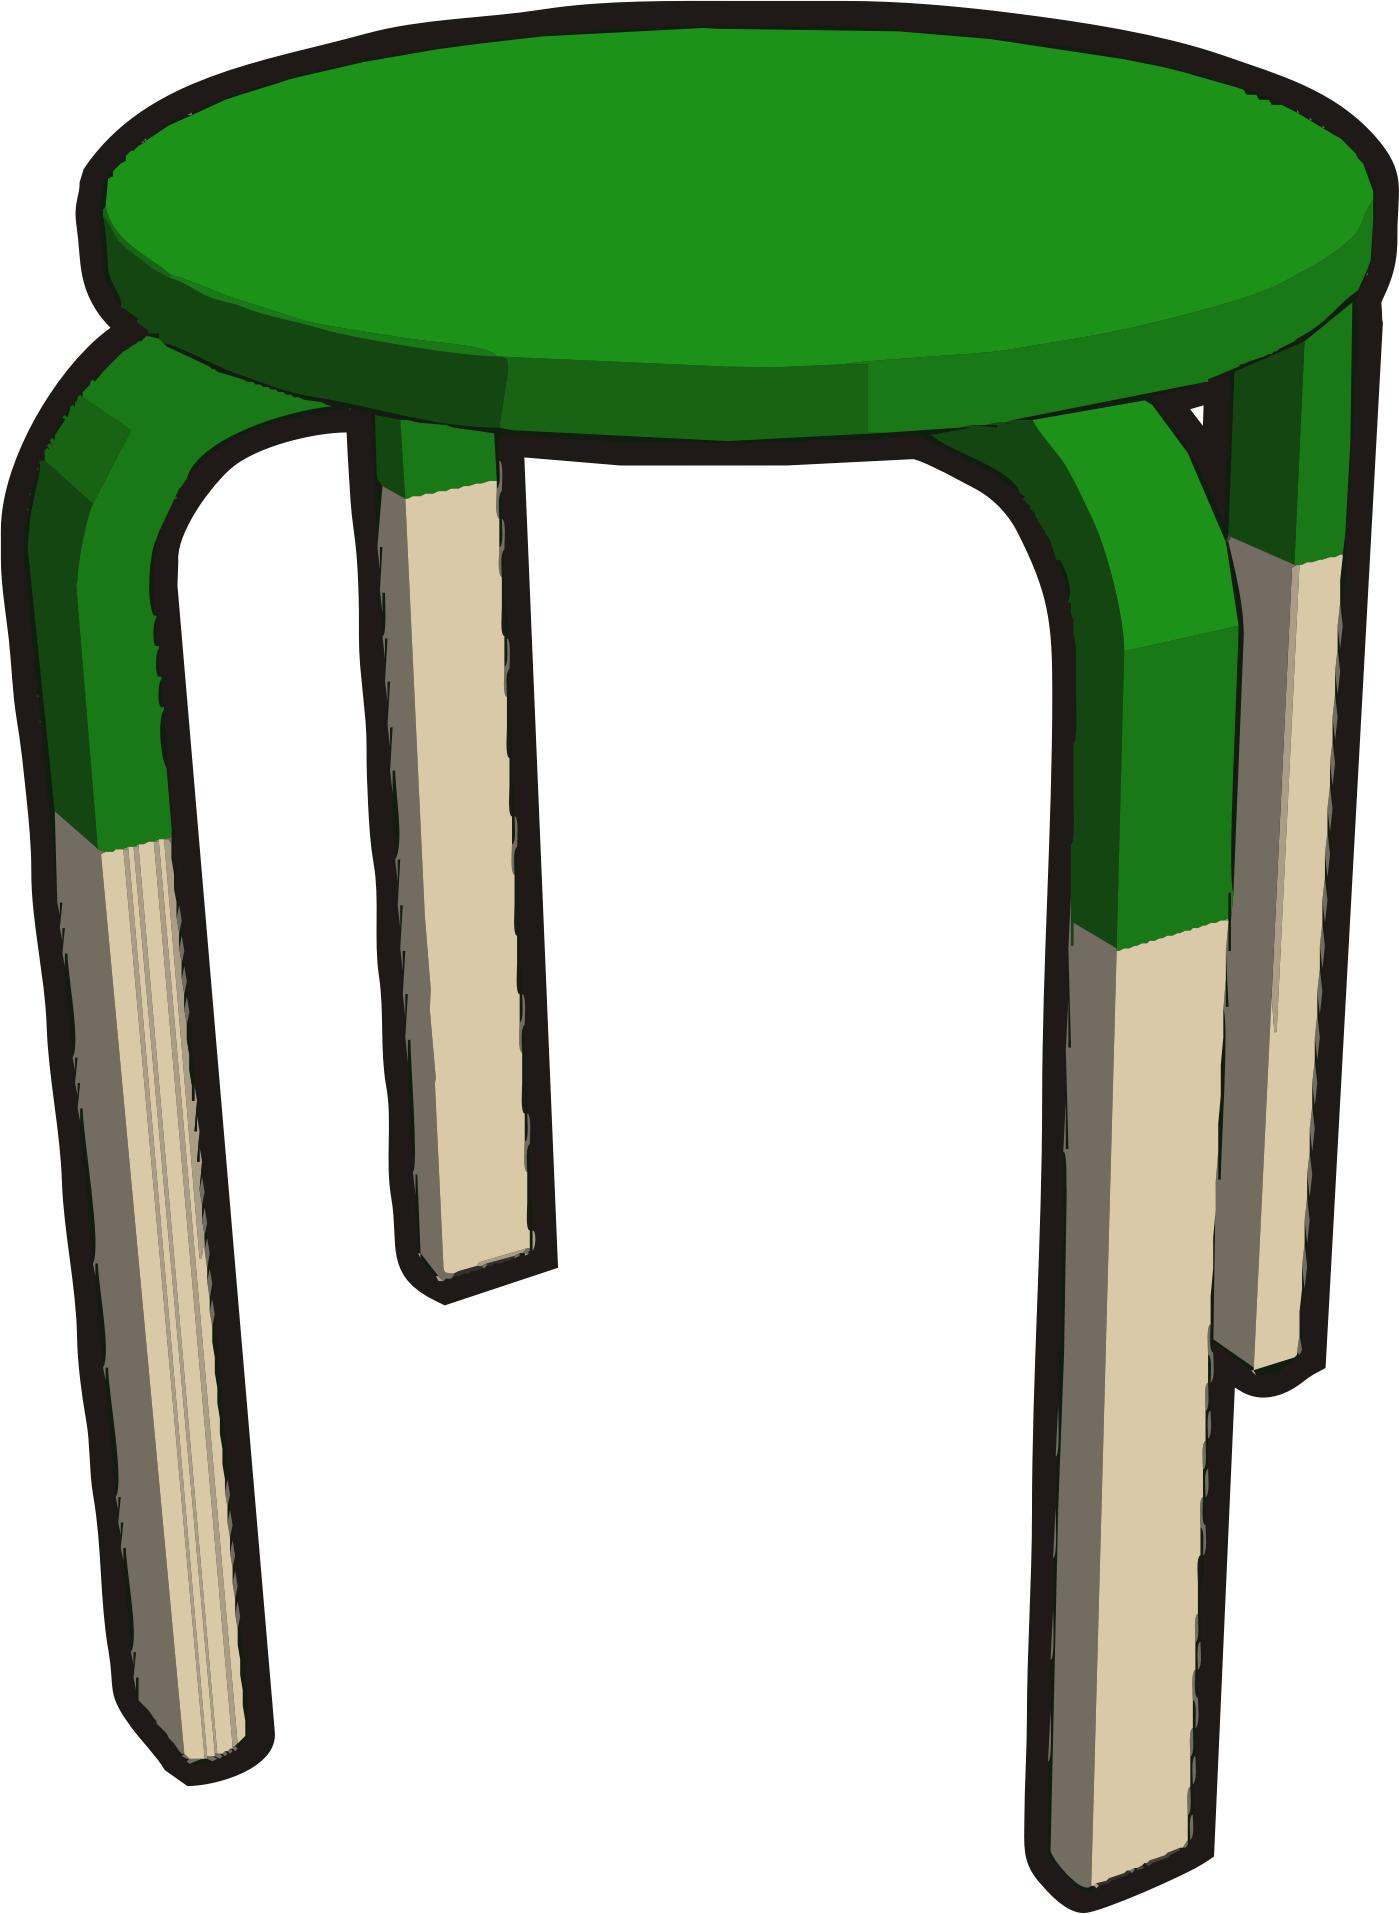 Ikea stuff - Frosta stool, half green png